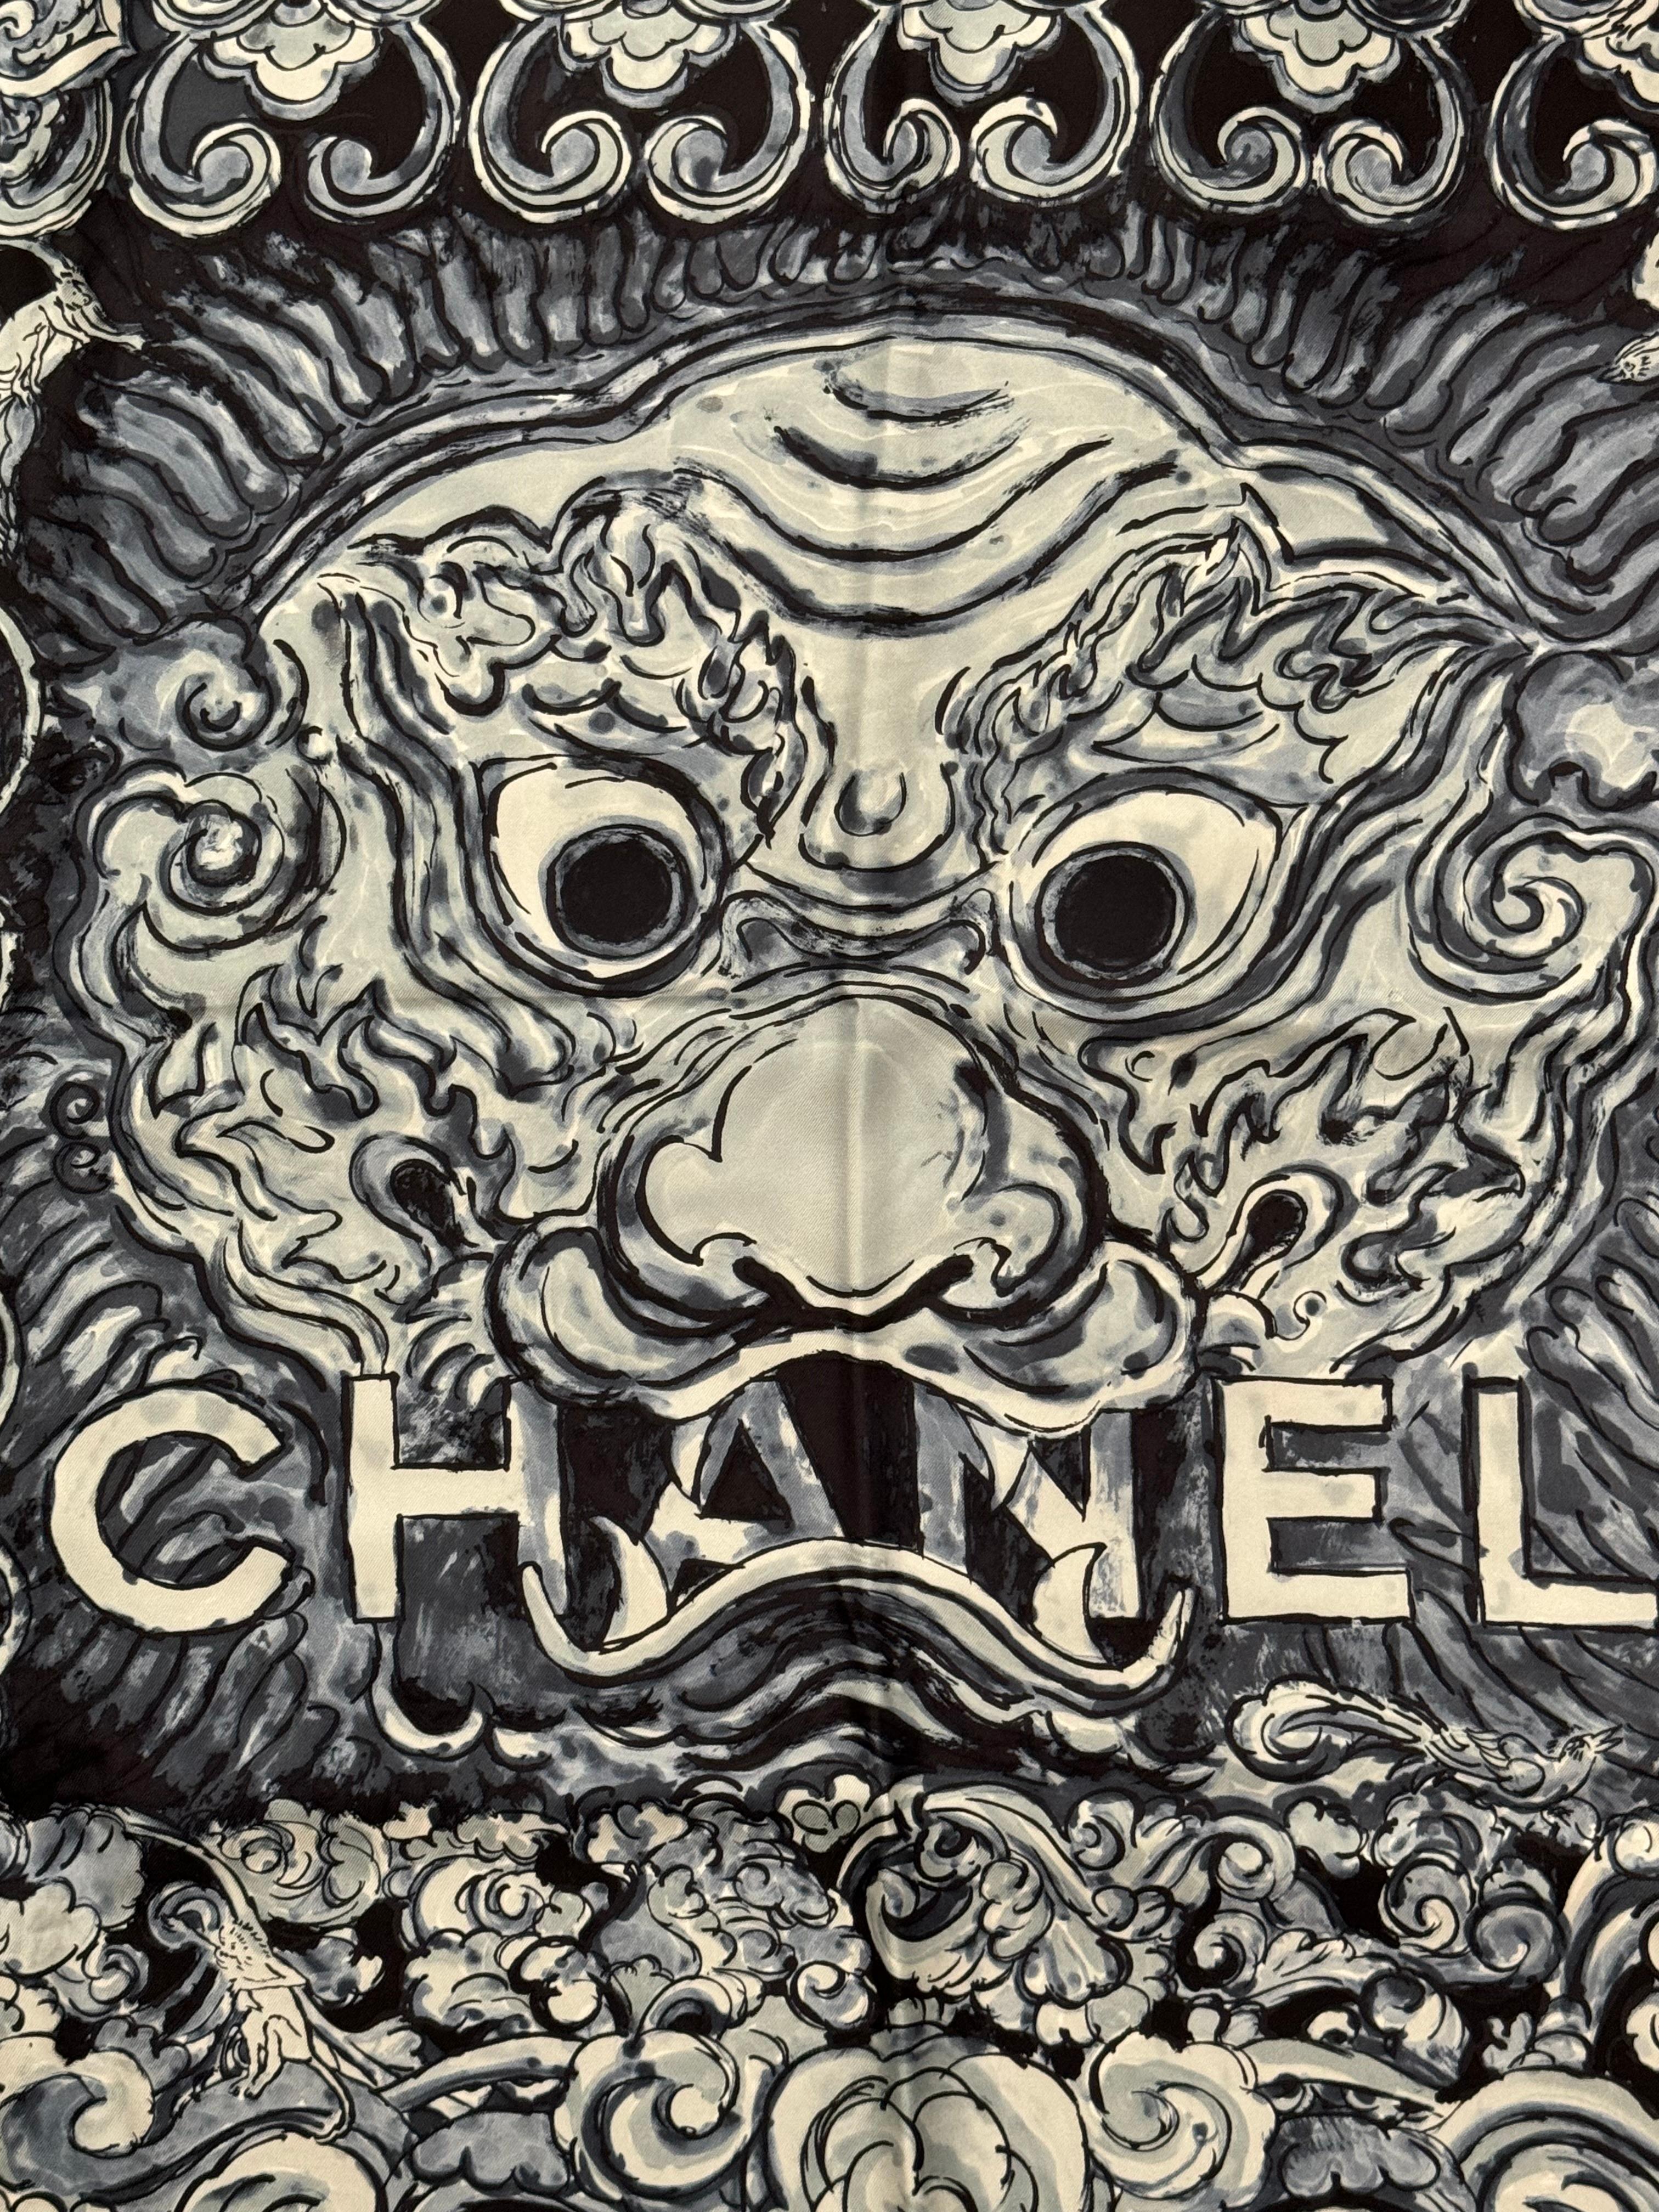 Seltener Chanel métiers d'art Paris Shanghai pre fall 2010 Seidenschal mit Originalverpackung, ausgezeichneter Zustand 